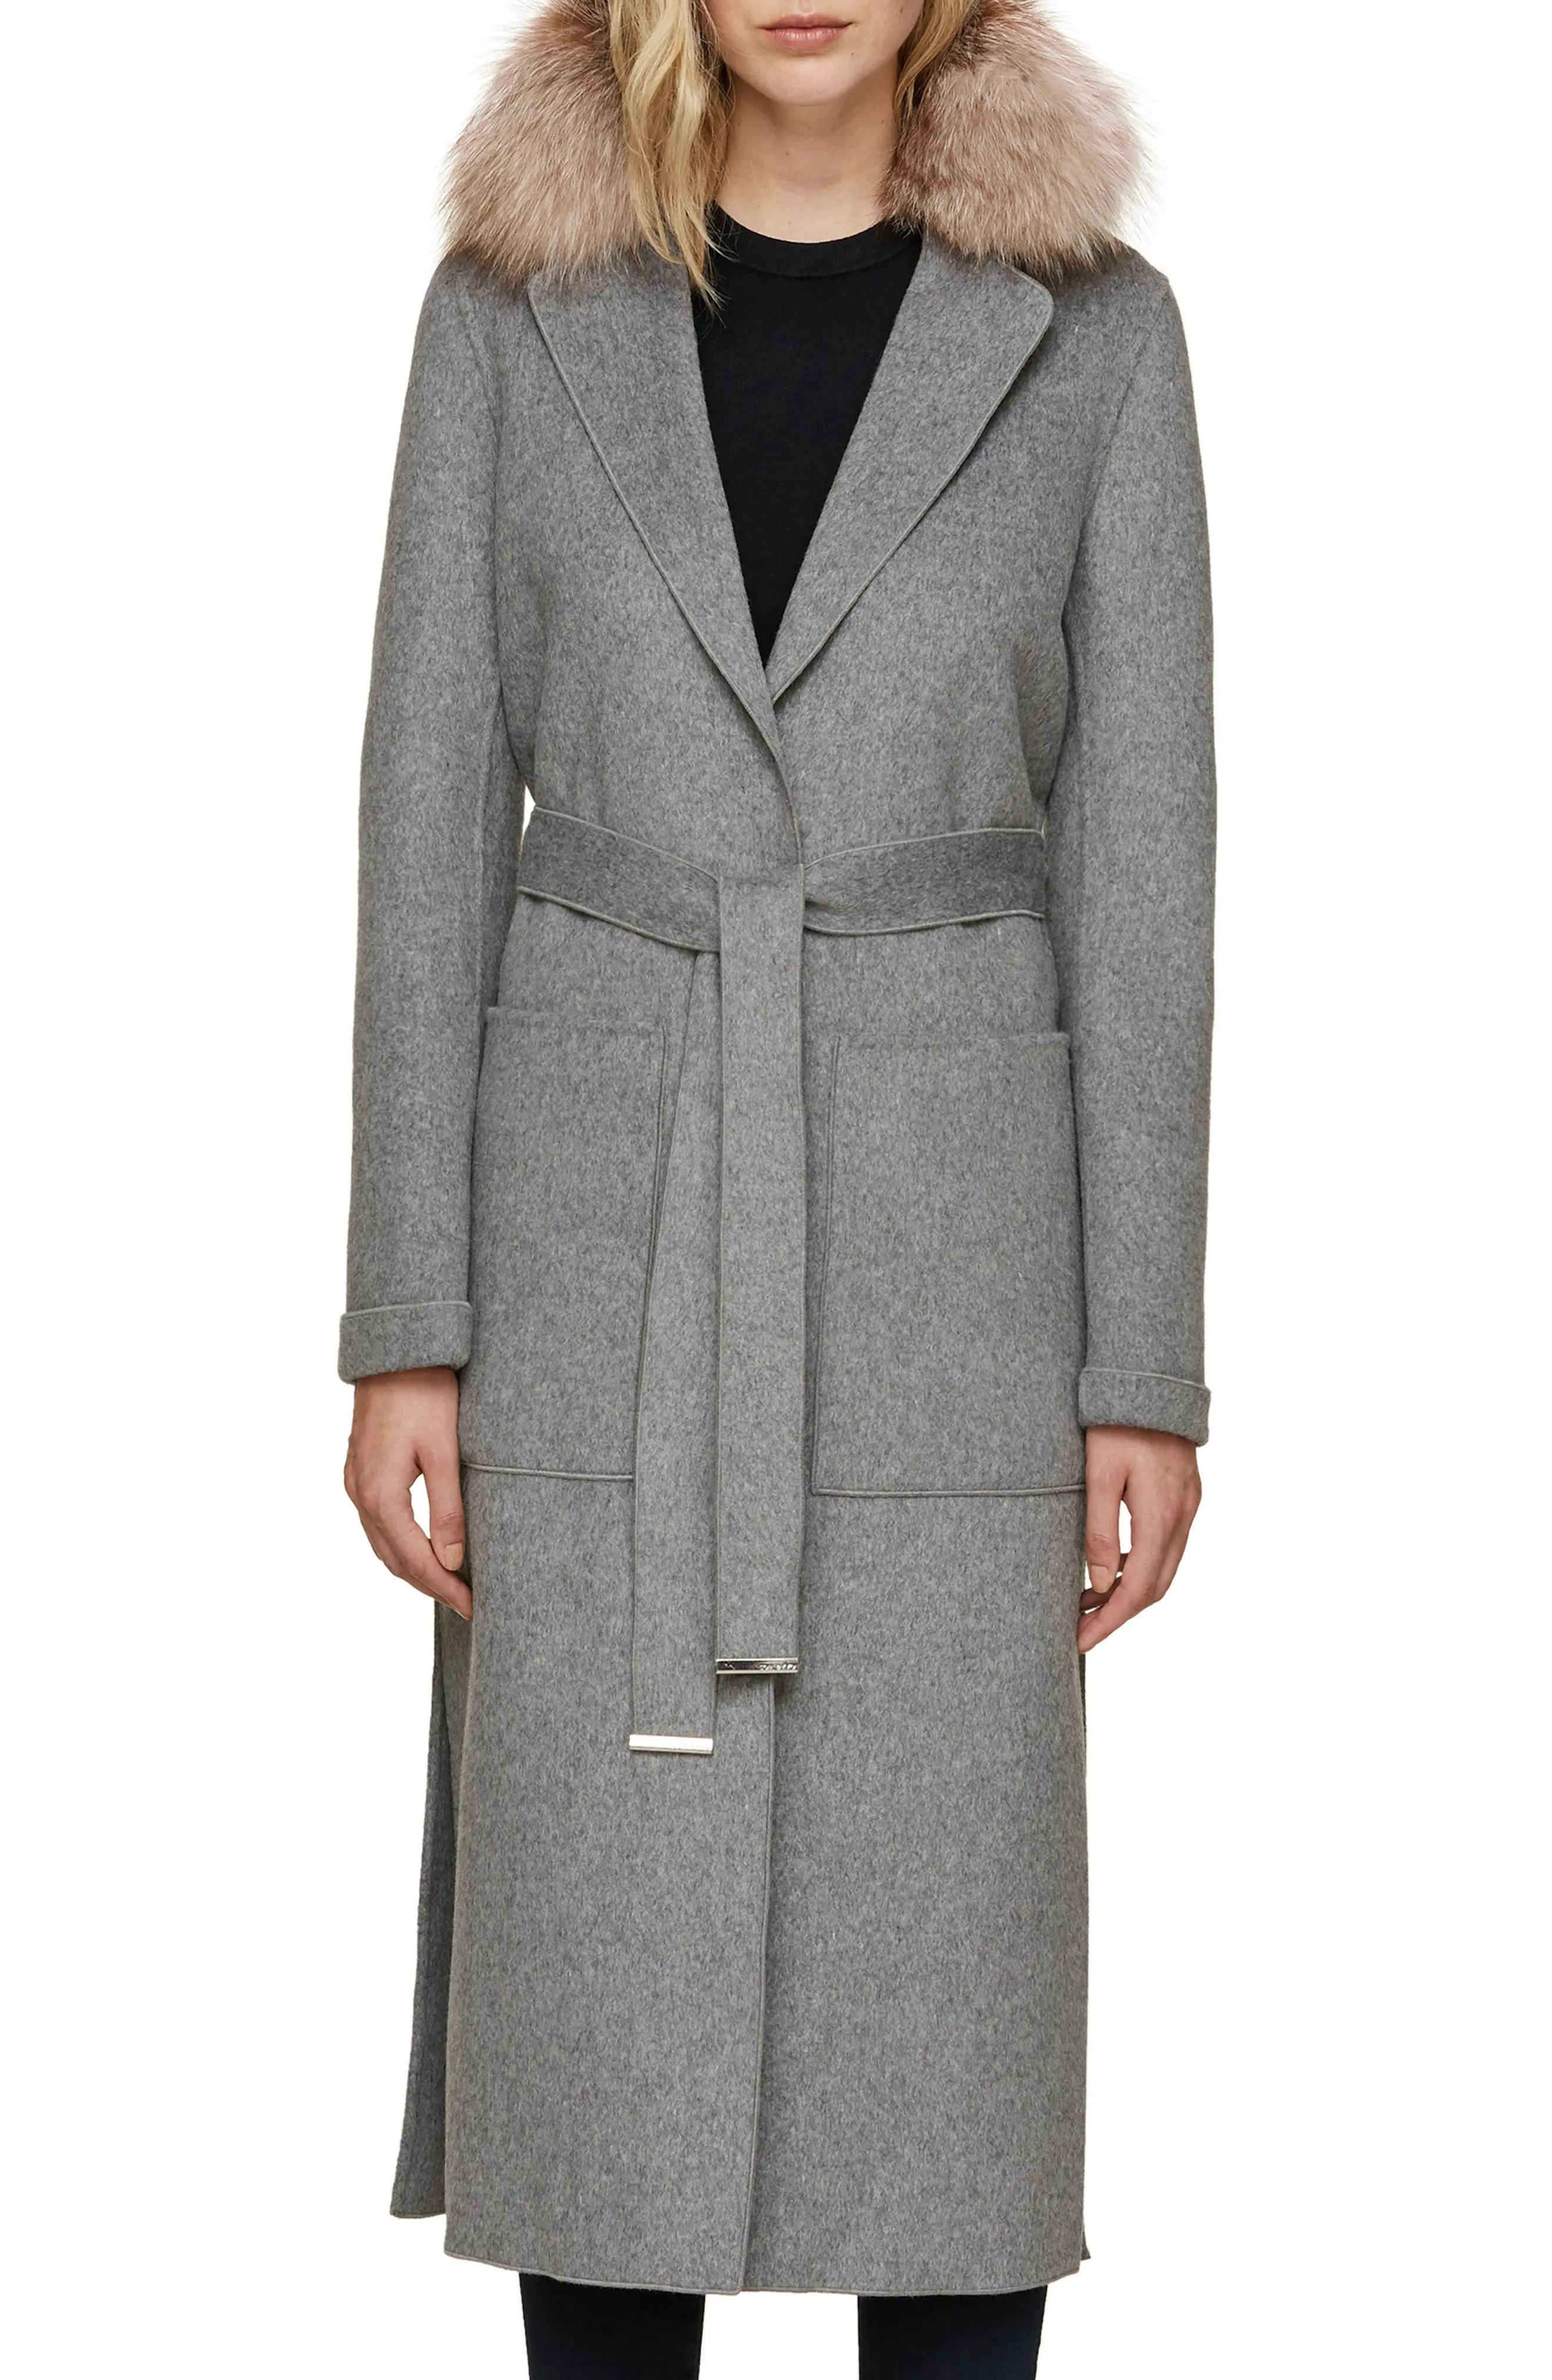 Soia & Kyo Wool Blend Genuine Fox Fur Trim Belted Coat | Nordstrom